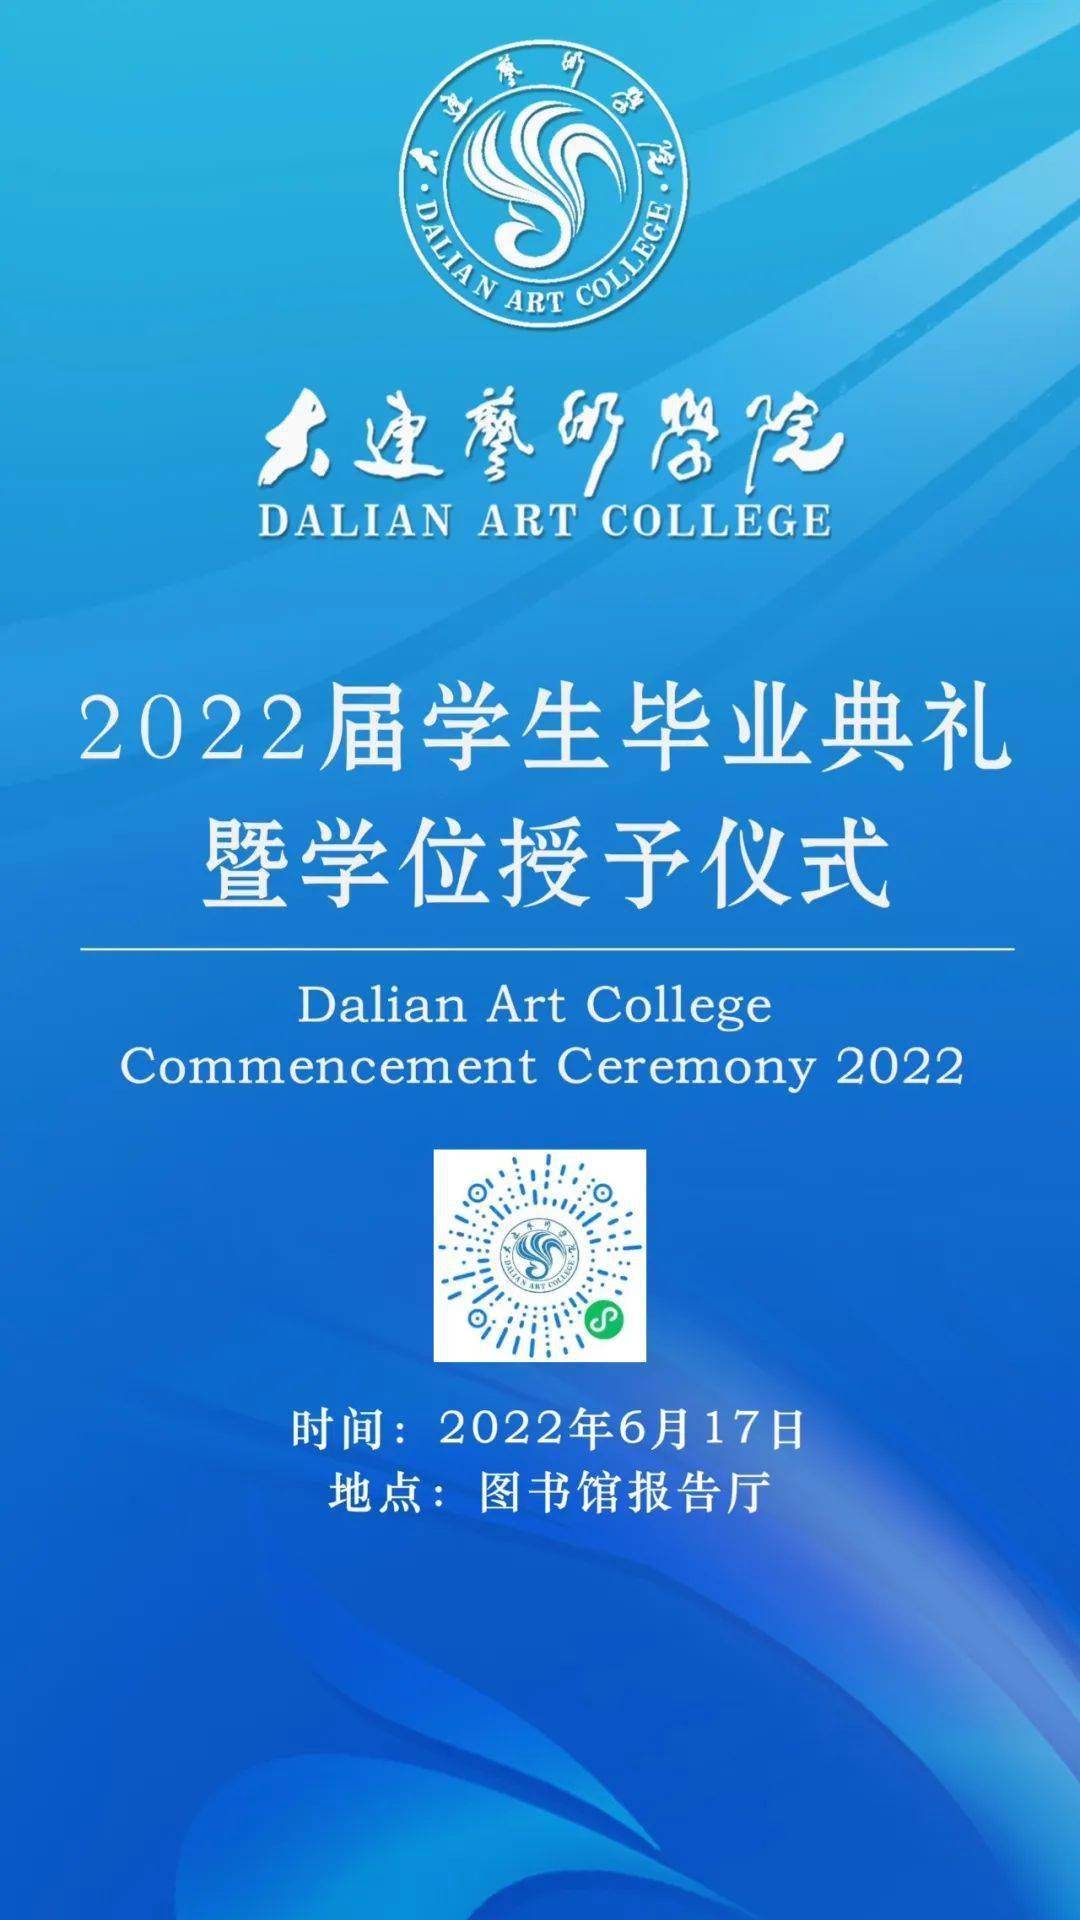 直播预告大连艺术学院2022届学生毕业典礼暨学位授予仪式